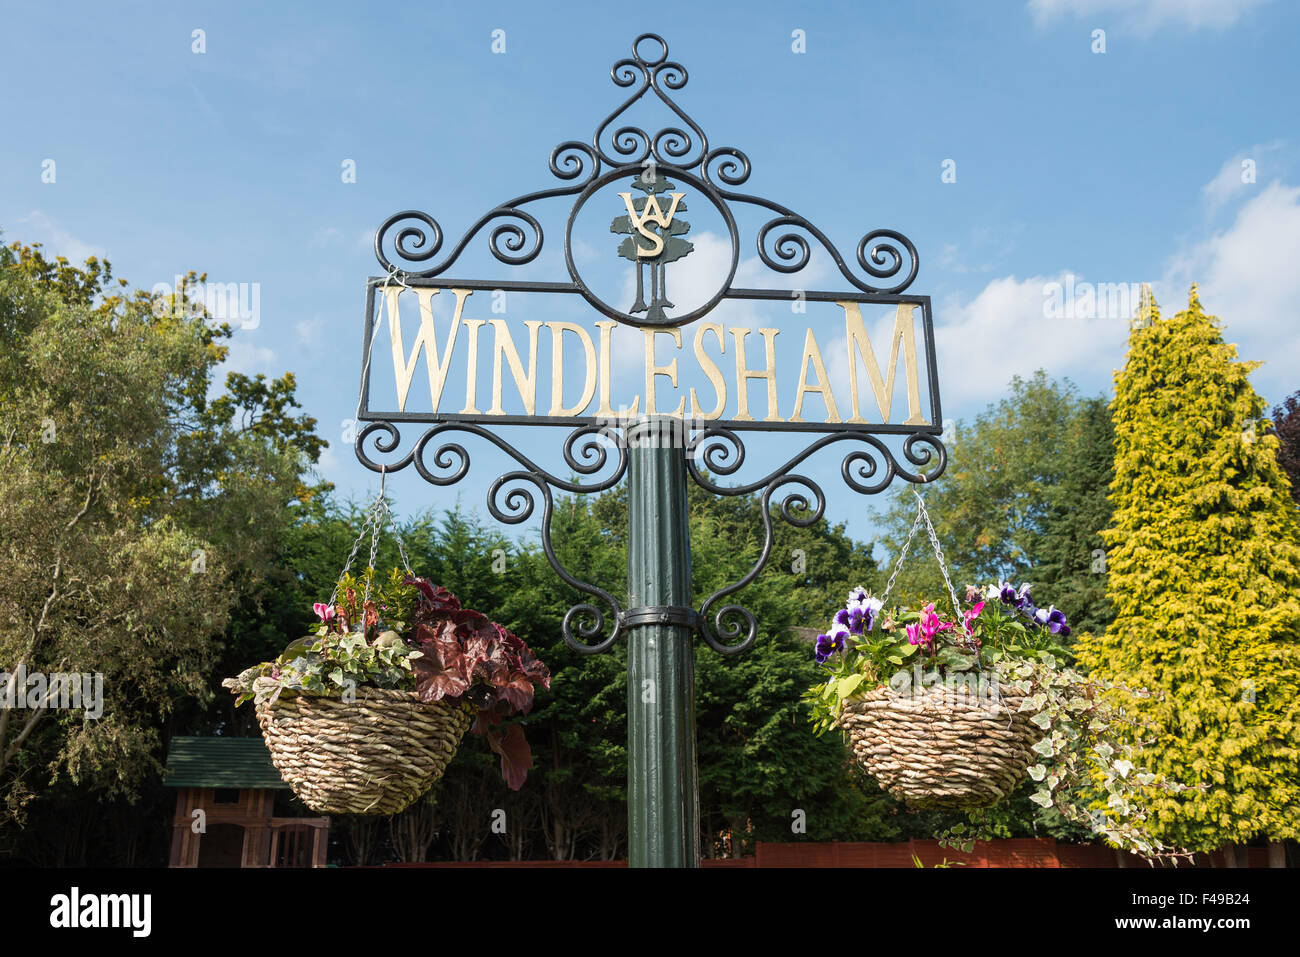 Windlesham village sign, Chertsey Road, Windlesham, Surrey, England, United Kingdom Stock Photo